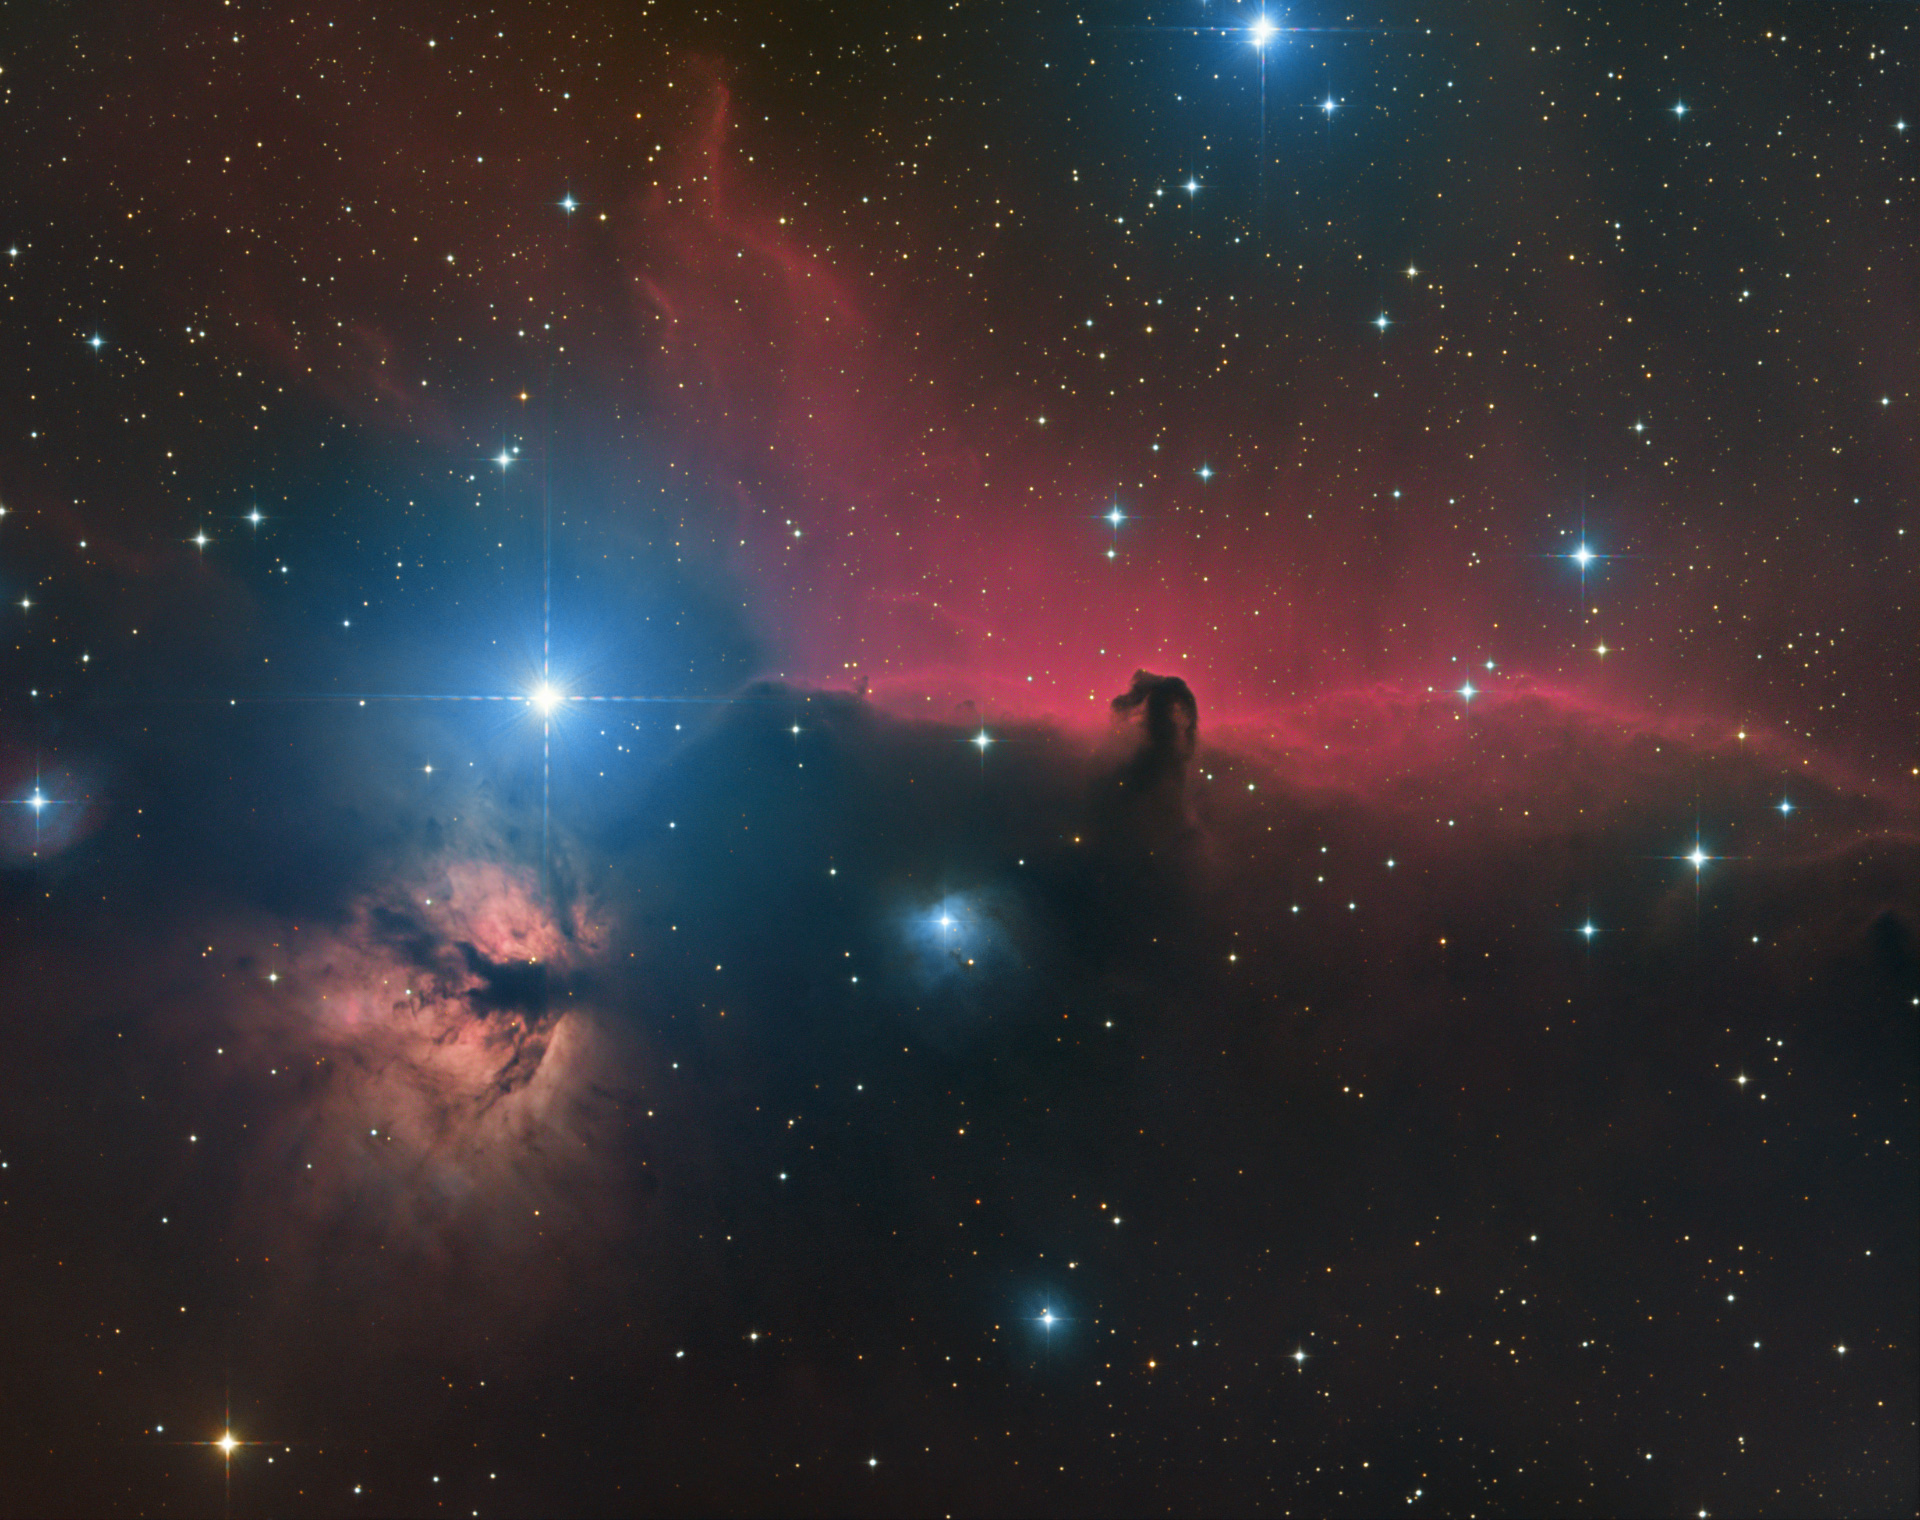 IC 434 - Horsehead nebula